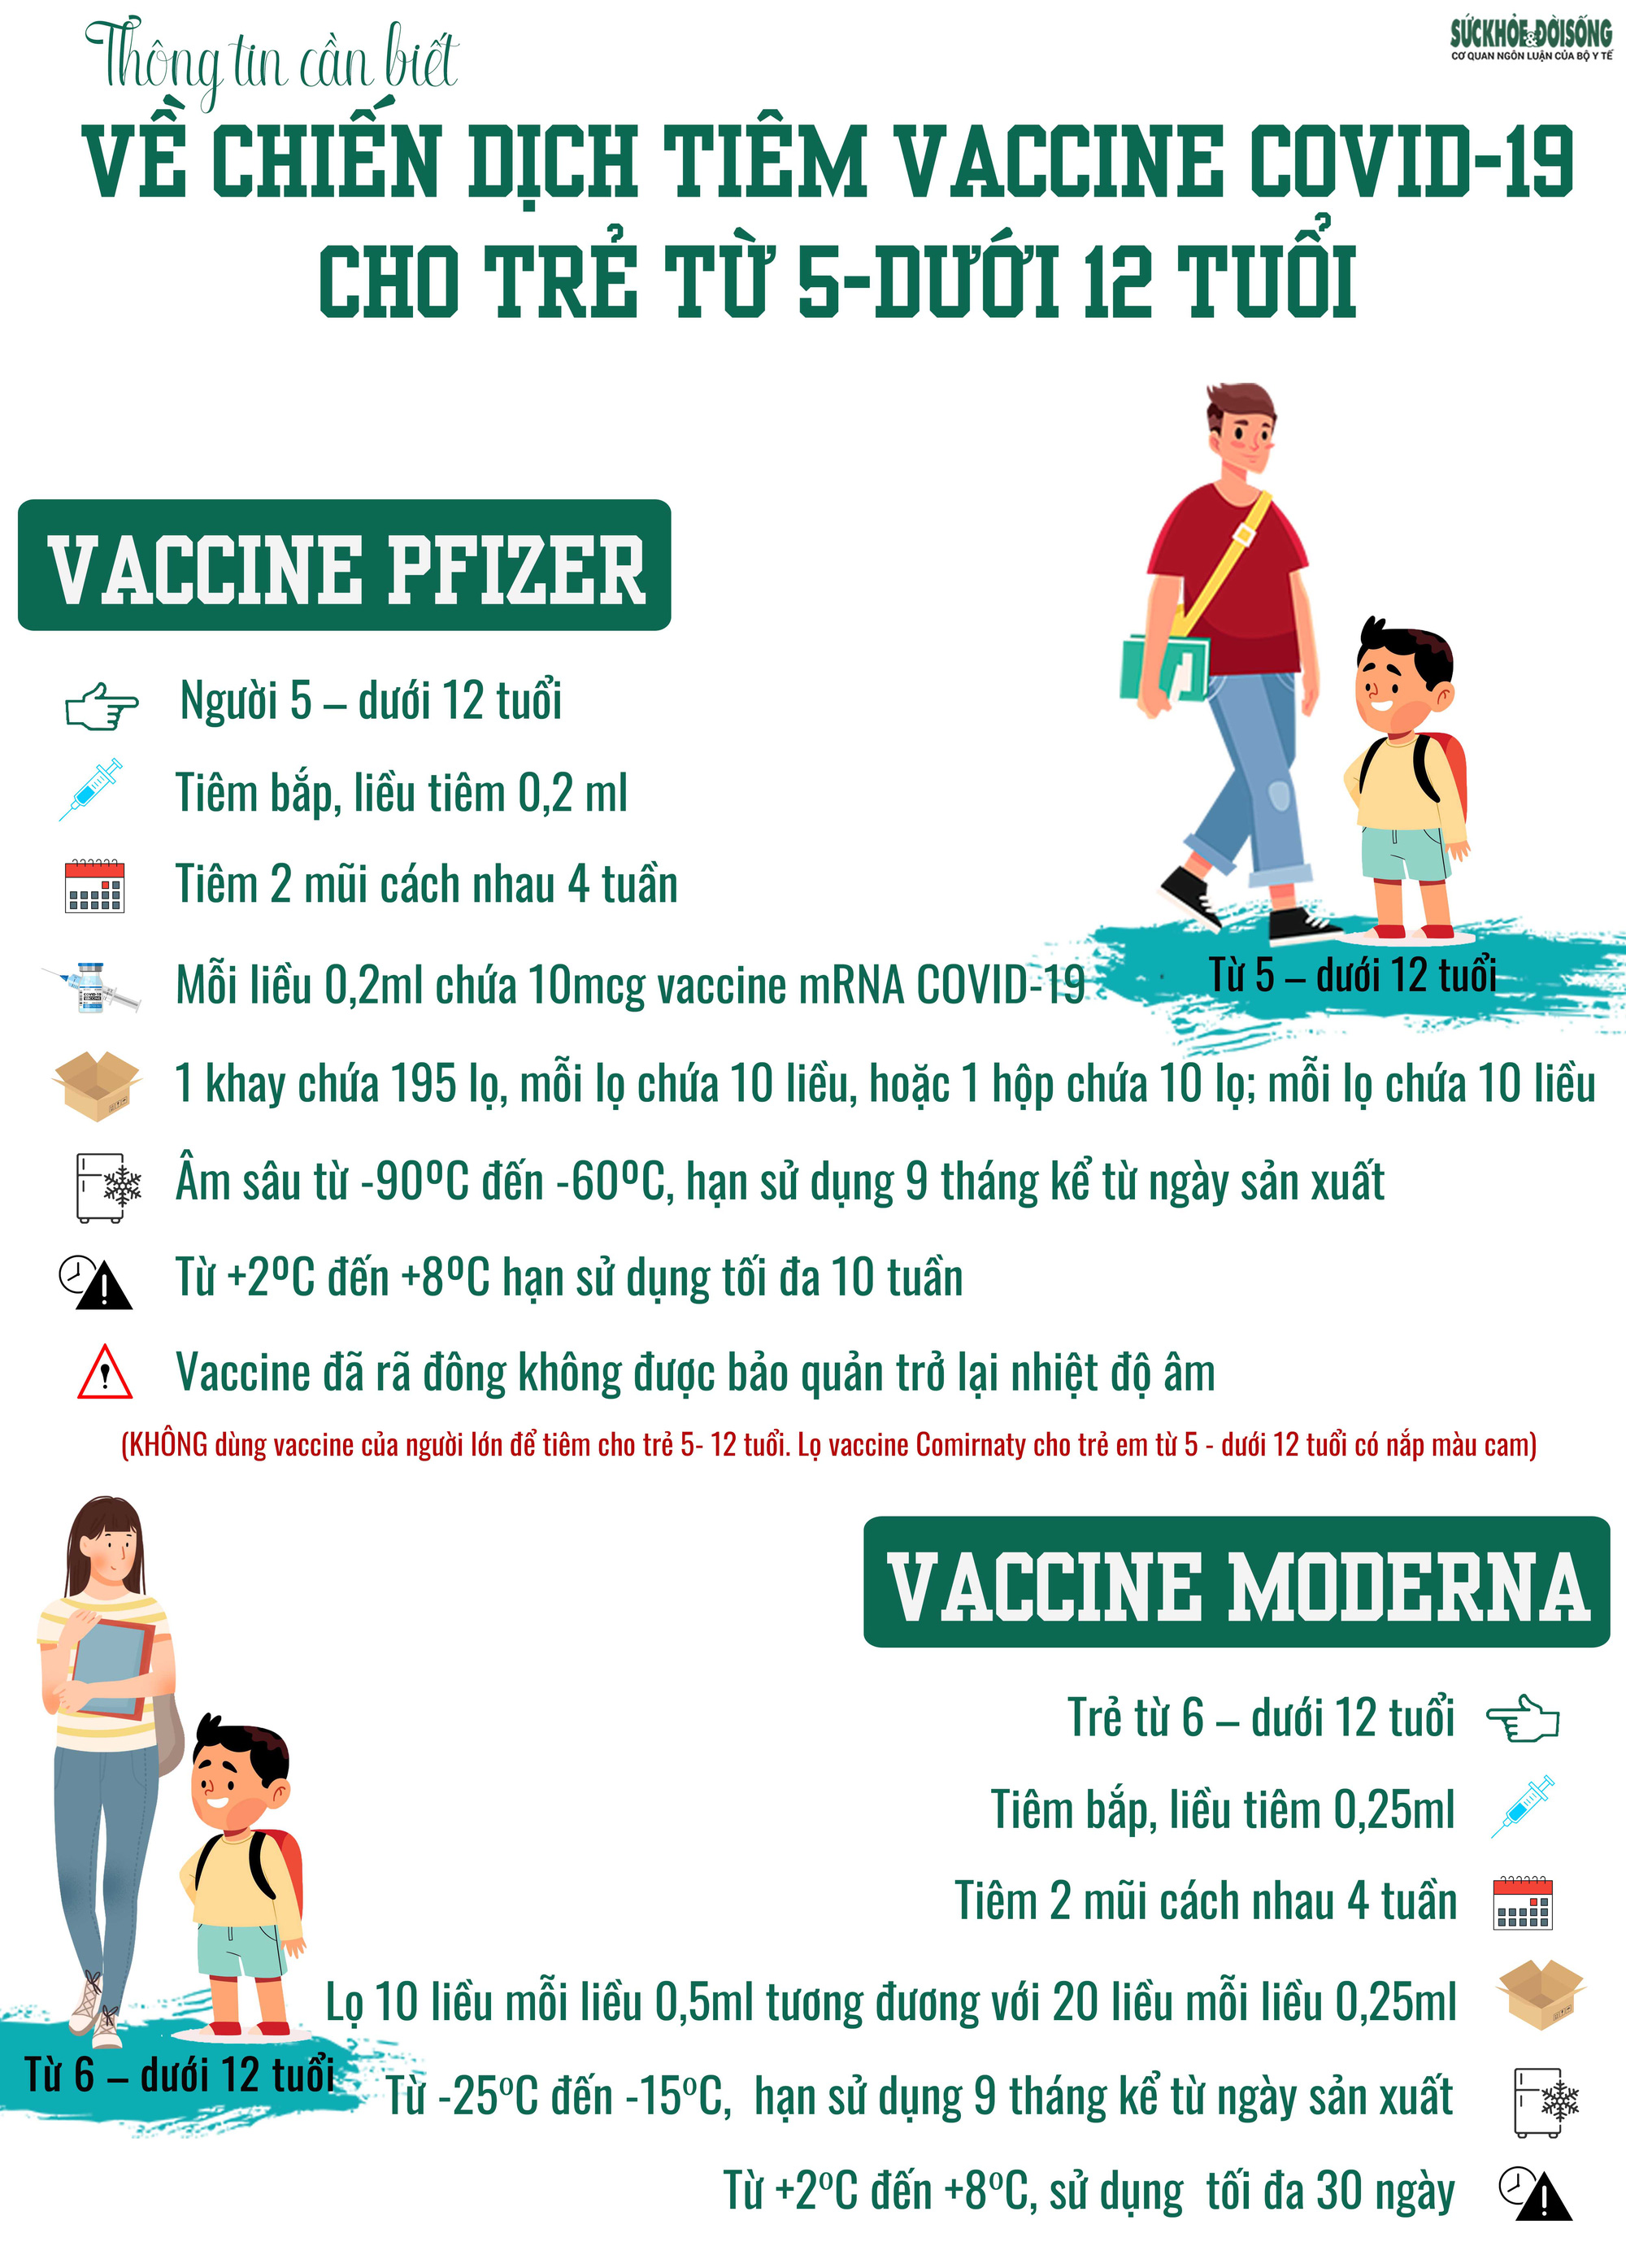 Tất cả thông tin về 2 loại vaccine phòng COVID-19 sẽ tiêm cho trẻ từ 5 - dưới 12 tuổi, phụ huynh cần biết  - Ảnh 1.